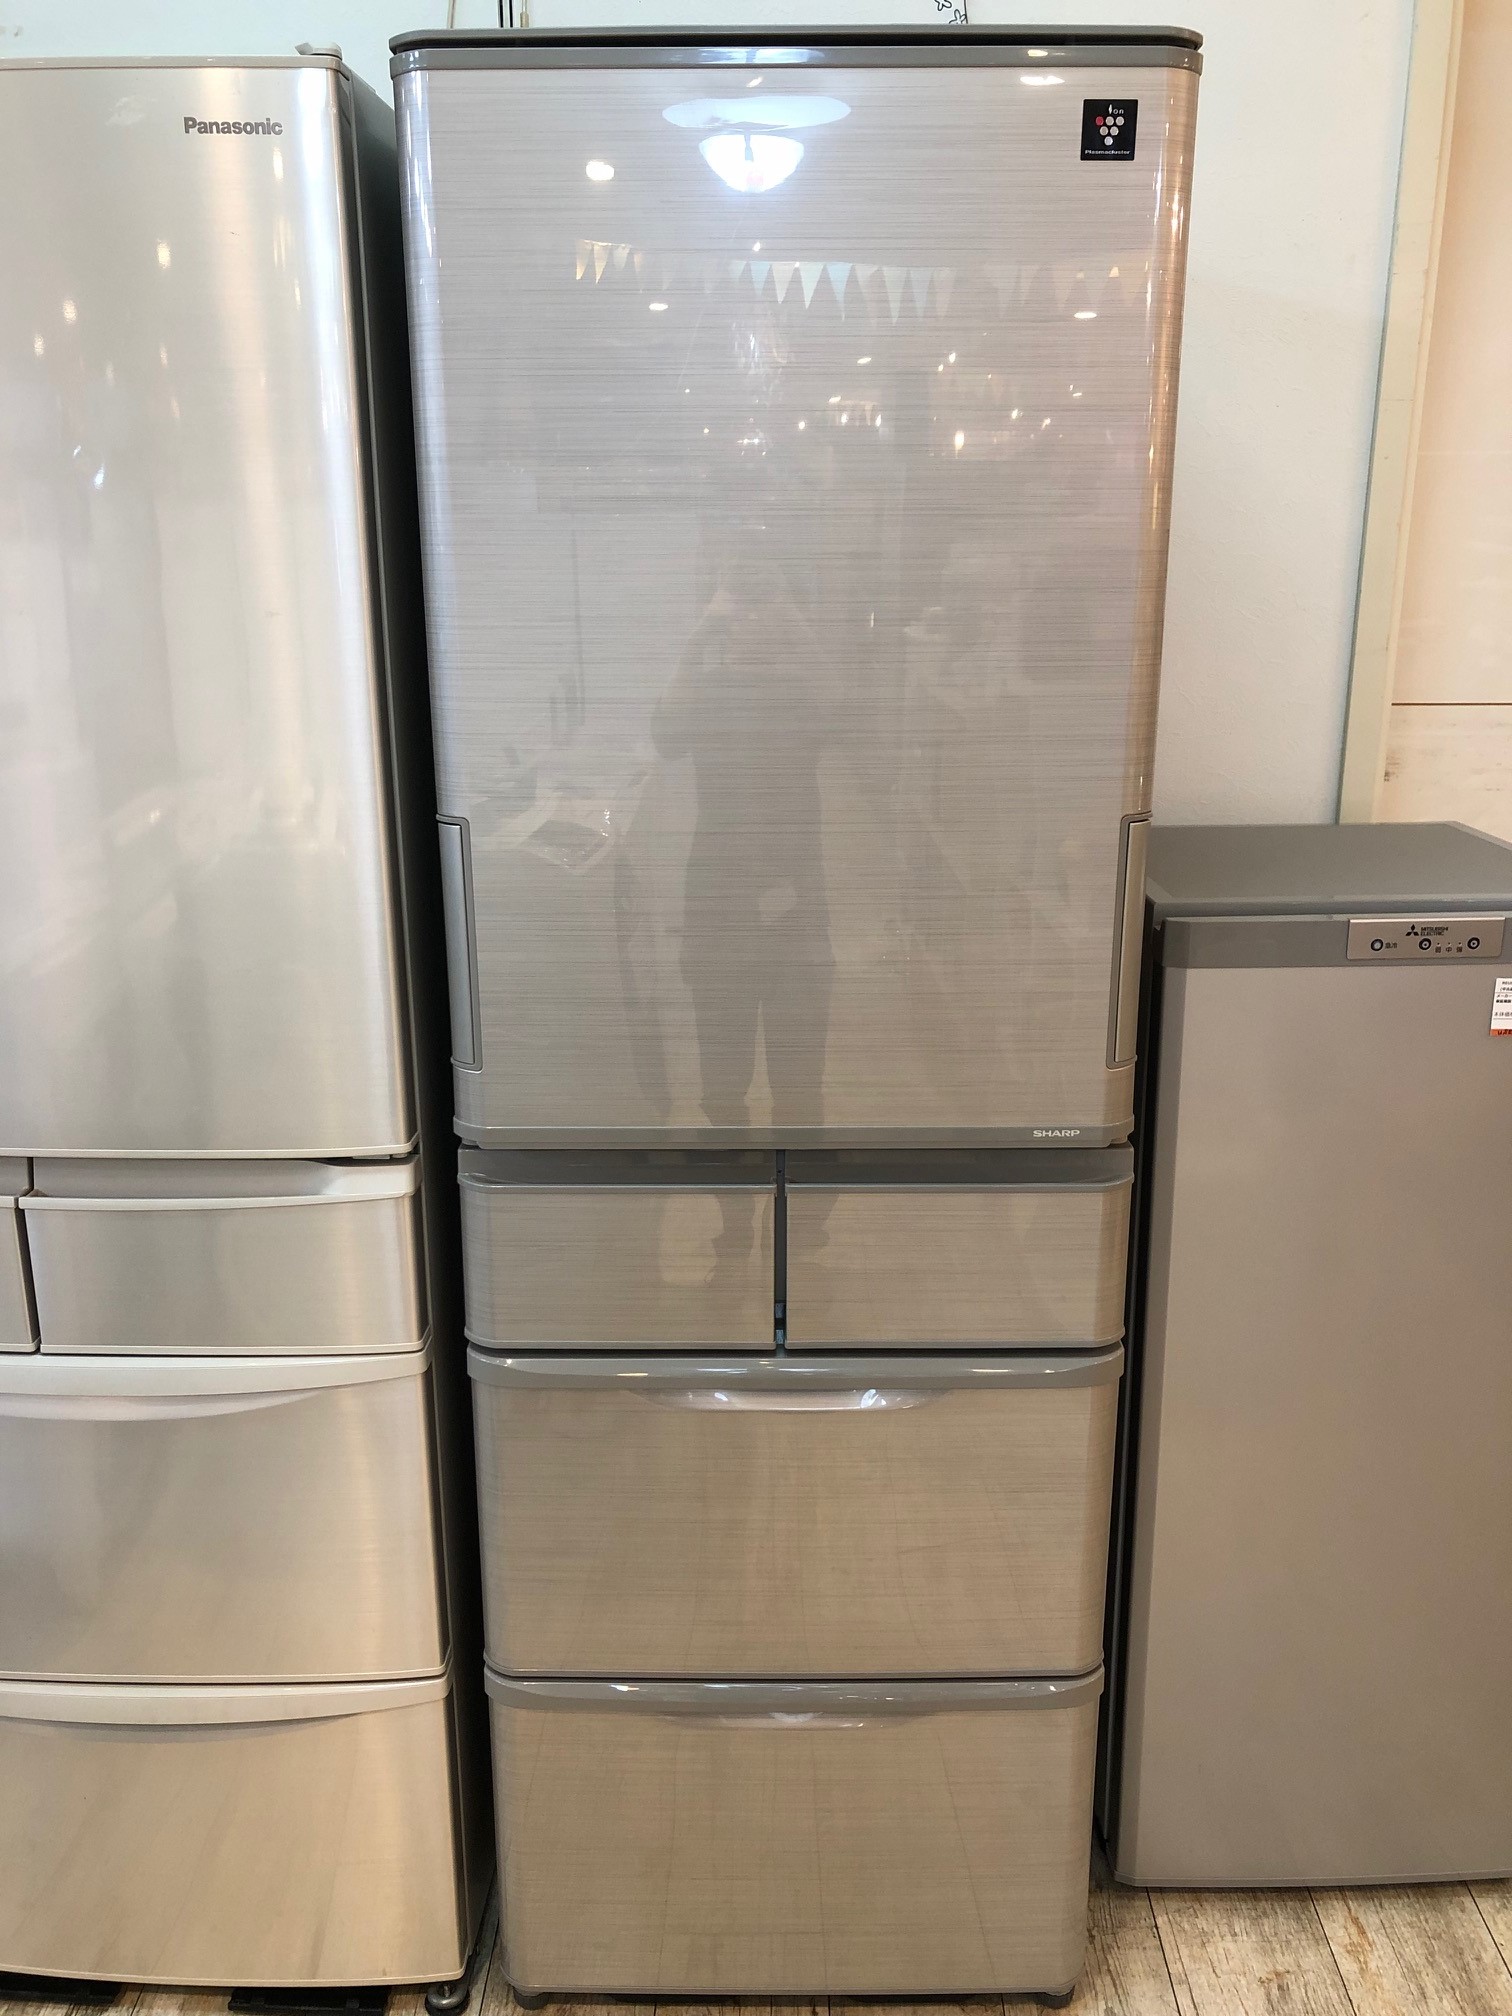 SHARP/シャープ 2016年製 412L冷蔵庫（SJ-PW42B-S）買取しました。 | 愛知と岐阜のリサイクルショップ 再良市場